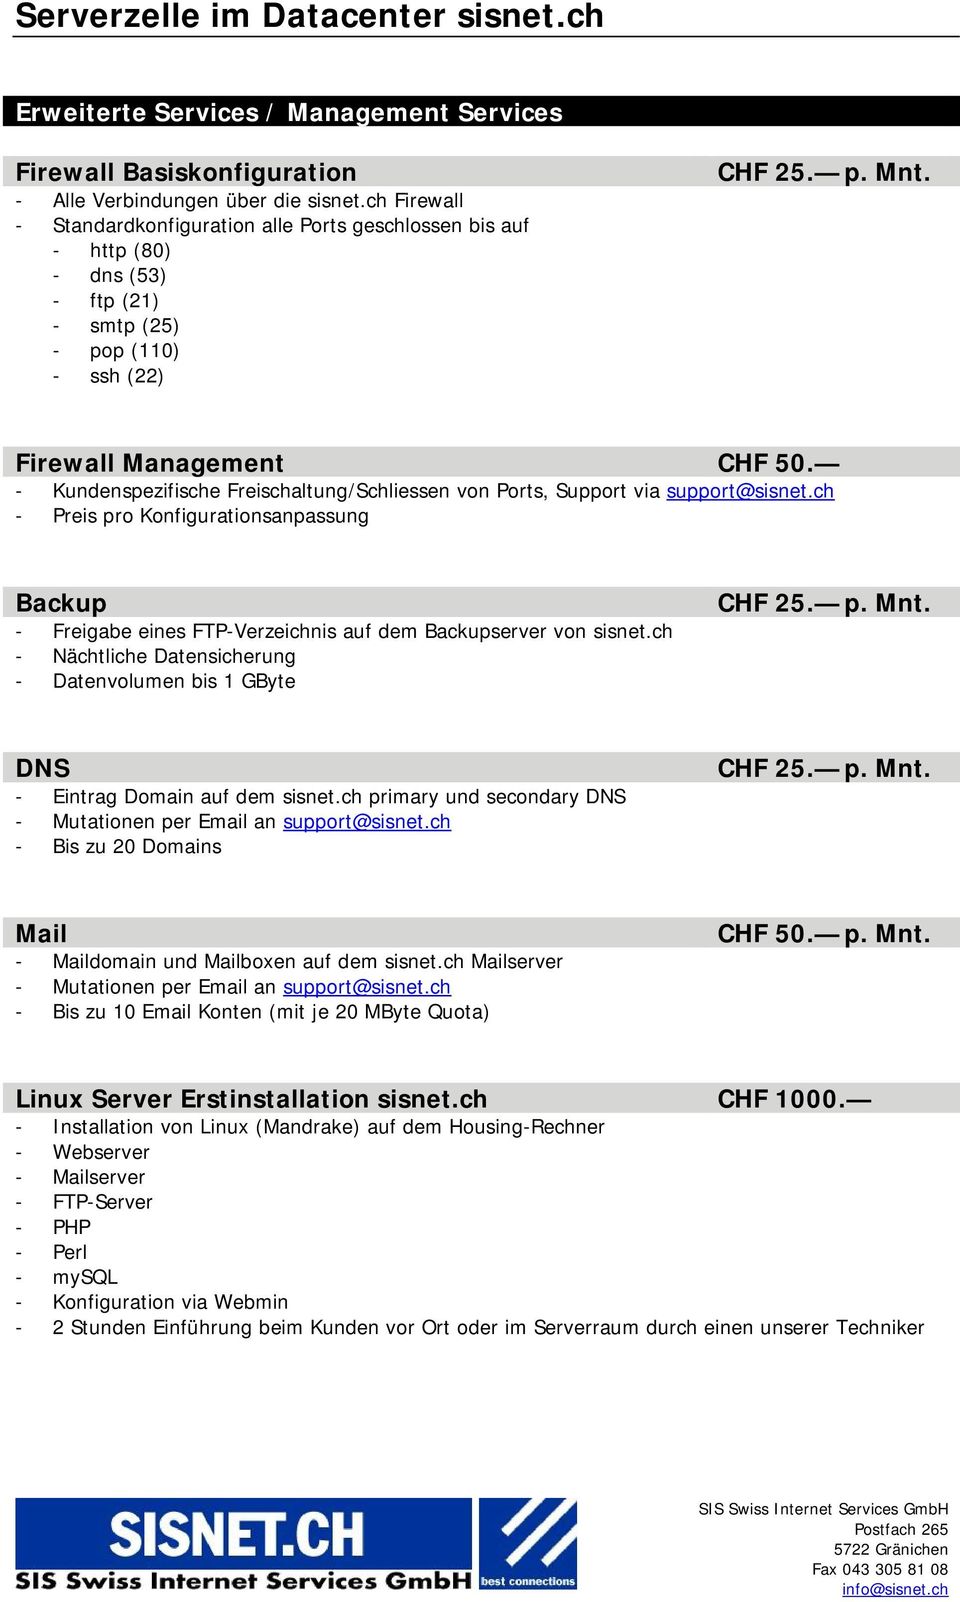 - Kundenspezifische Freischaltung/Schliessen von Ports, Support via support@sisnet.ch - Preis pro Konfigurationsanpassung Backup - Freigabe eines FTP-Verzeichnis auf dem Backupserver von sisnet.